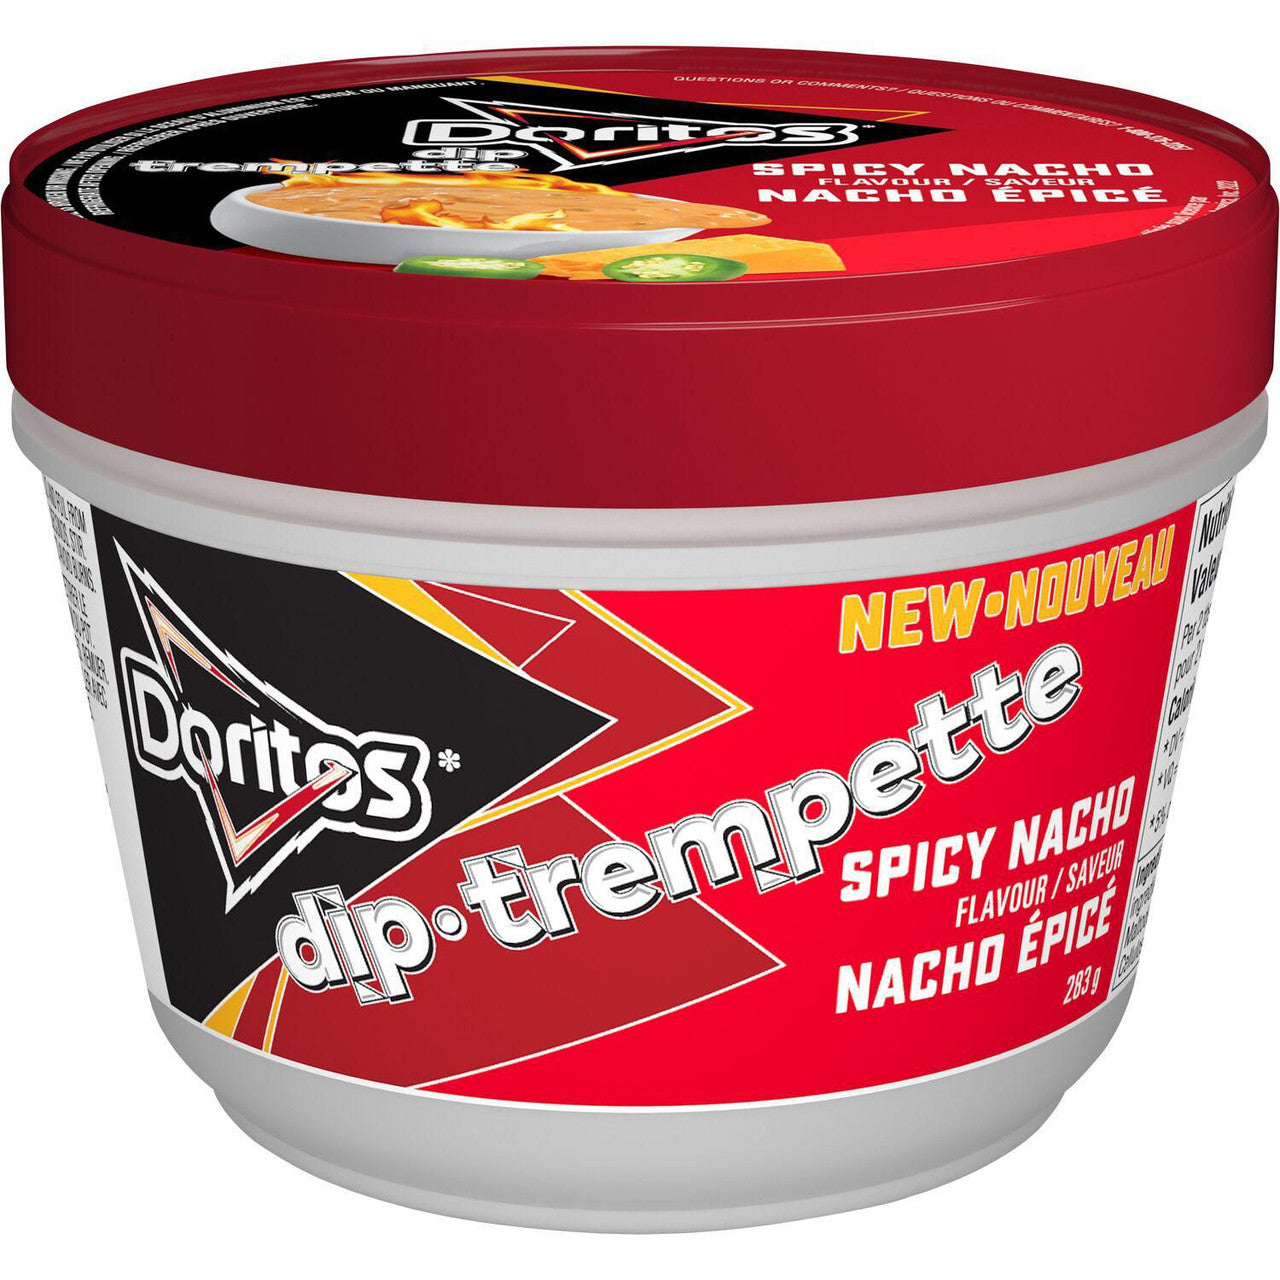 Doritos Spicy Nacho Flavor Dip, 283g/9.9 oz., {Imported from Canada}